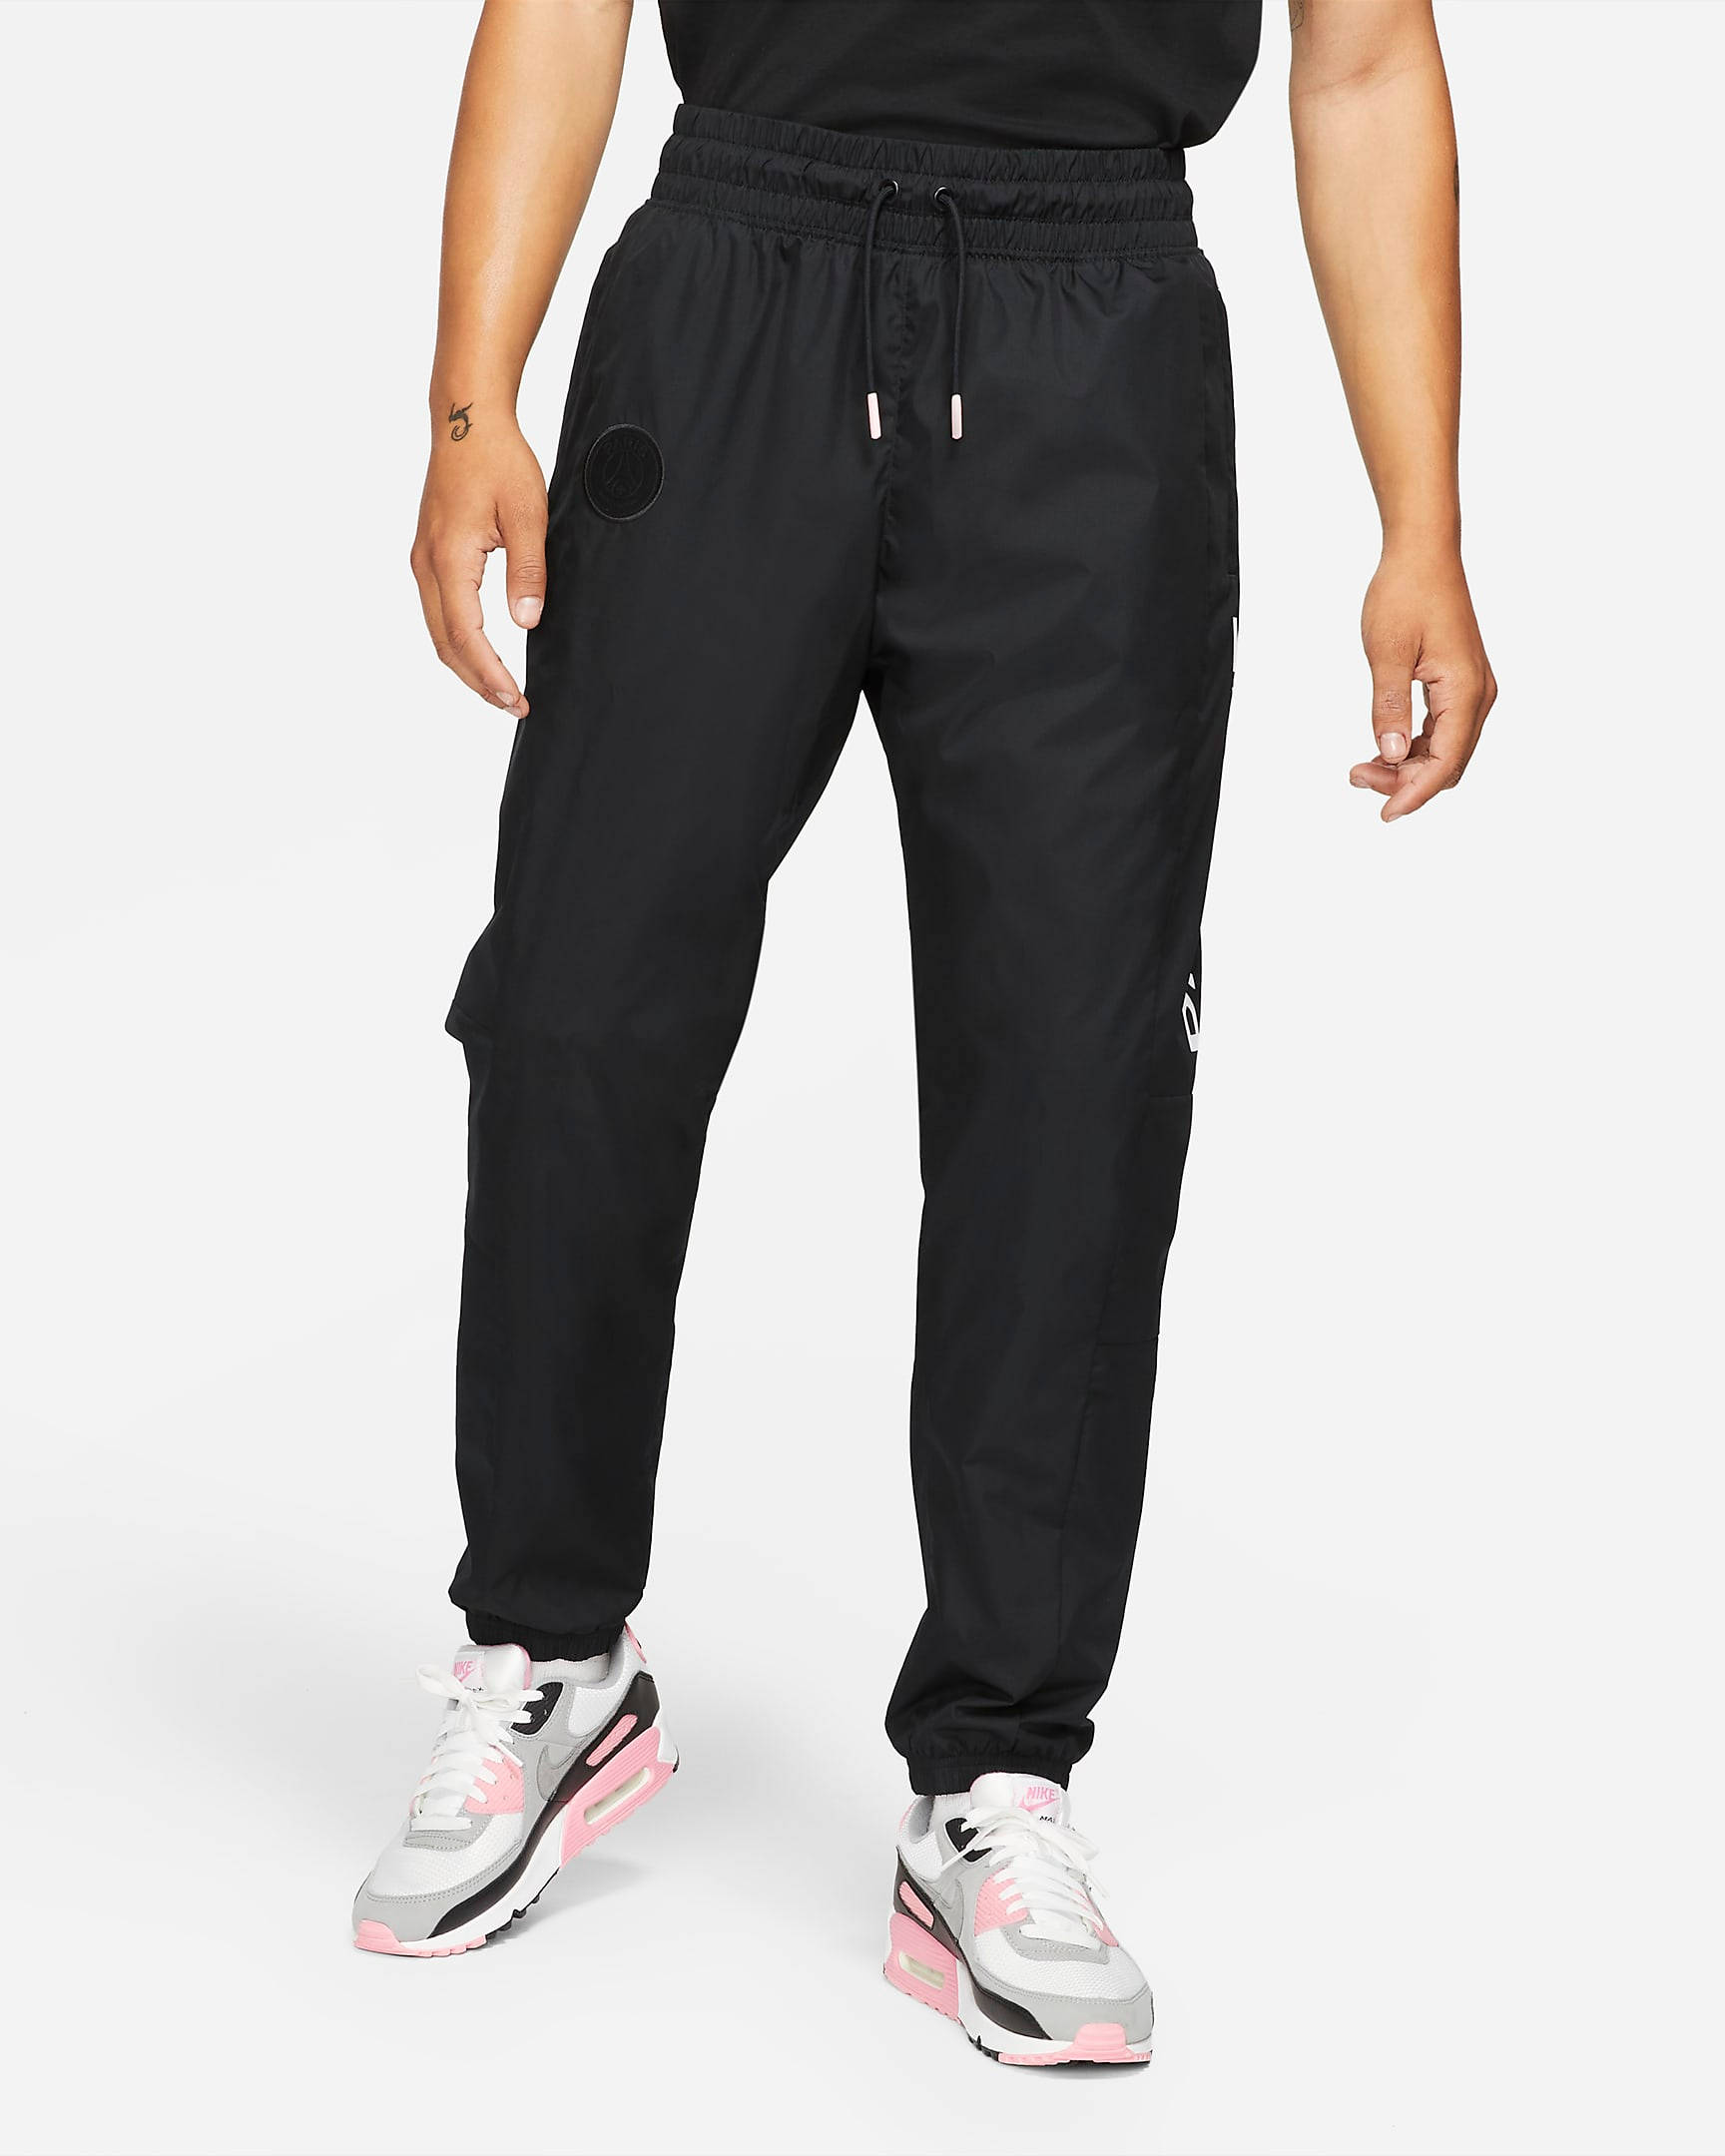 Nike Paris Saint-Germain Woven Trousers - Black | The Sole Supplier